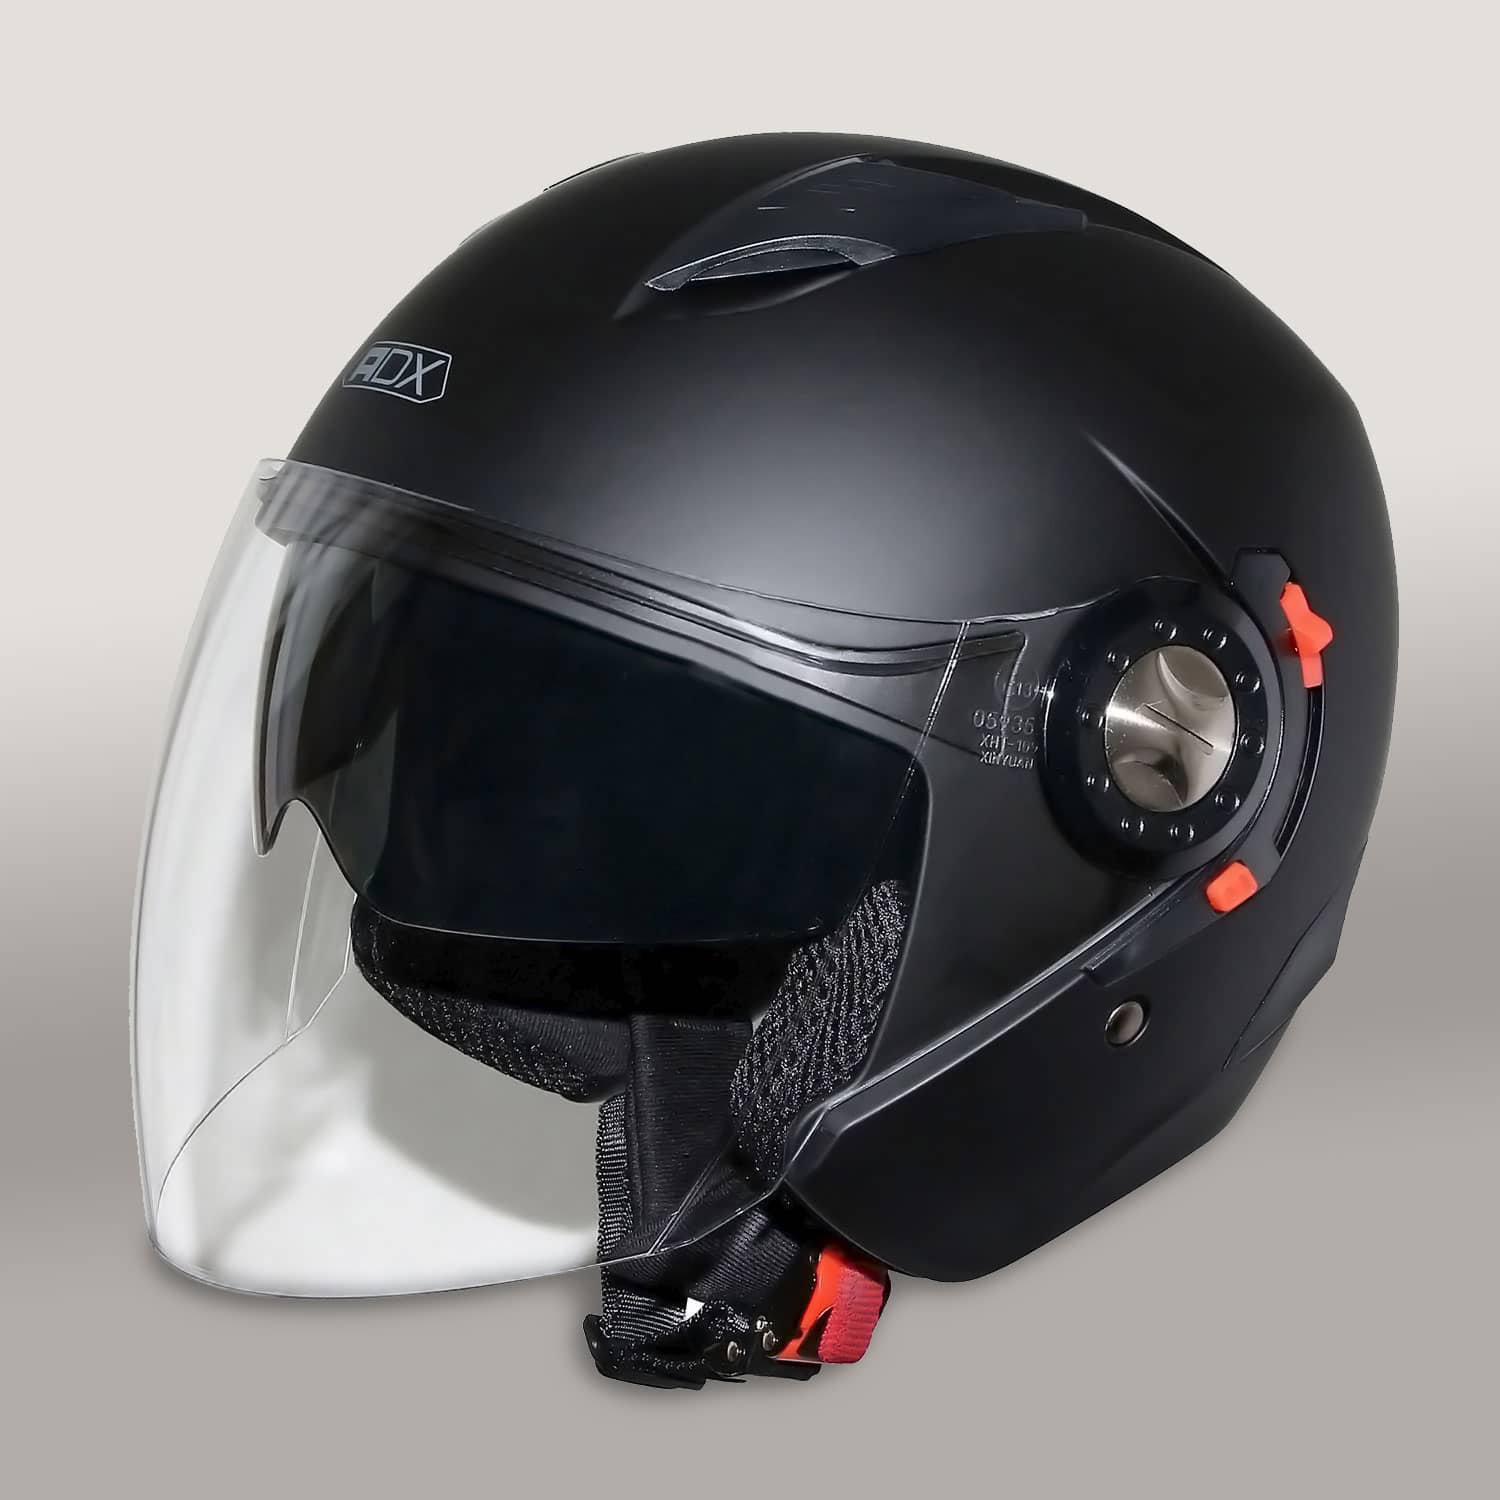 Superbe casque moto cross de la marque ADX (LIVRAISON RAPIDE)